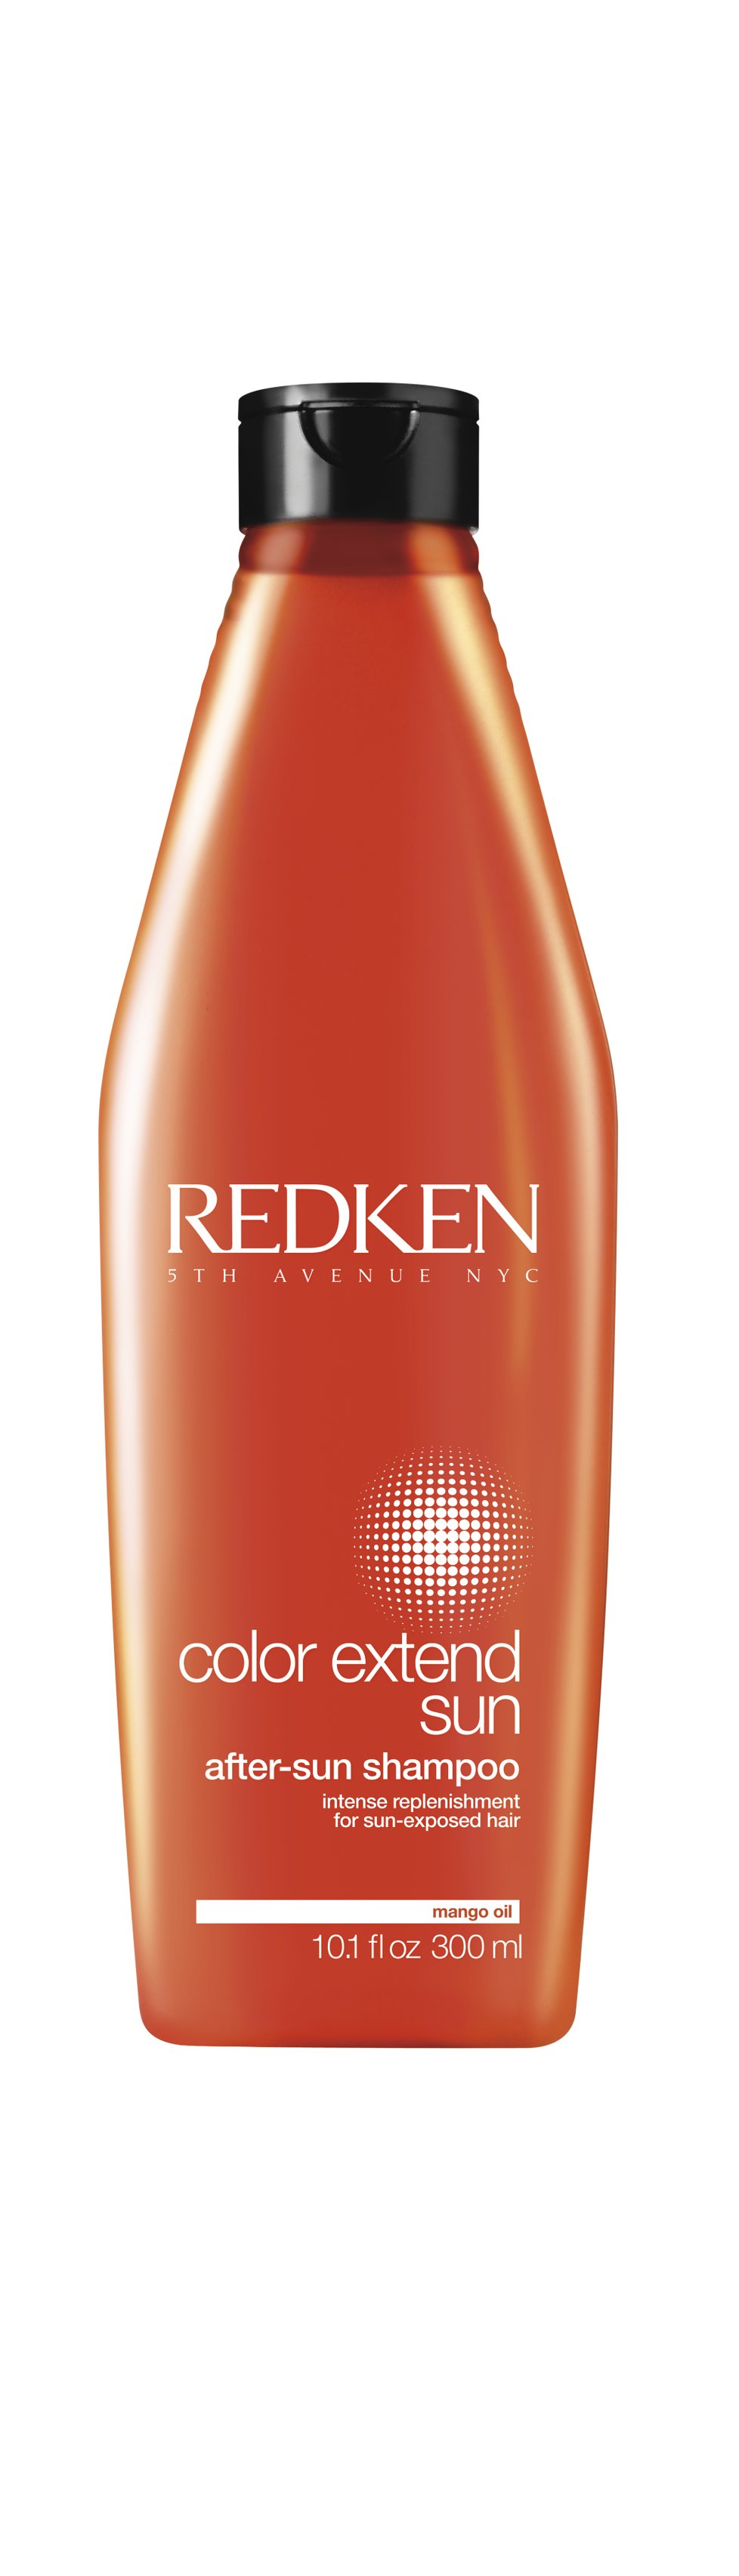 Šampon pro dlouhotrvající barvu a pro ochranu proti slunečnímu záření: Color Extend Sun, Redken, 425 Kč (300 ml)